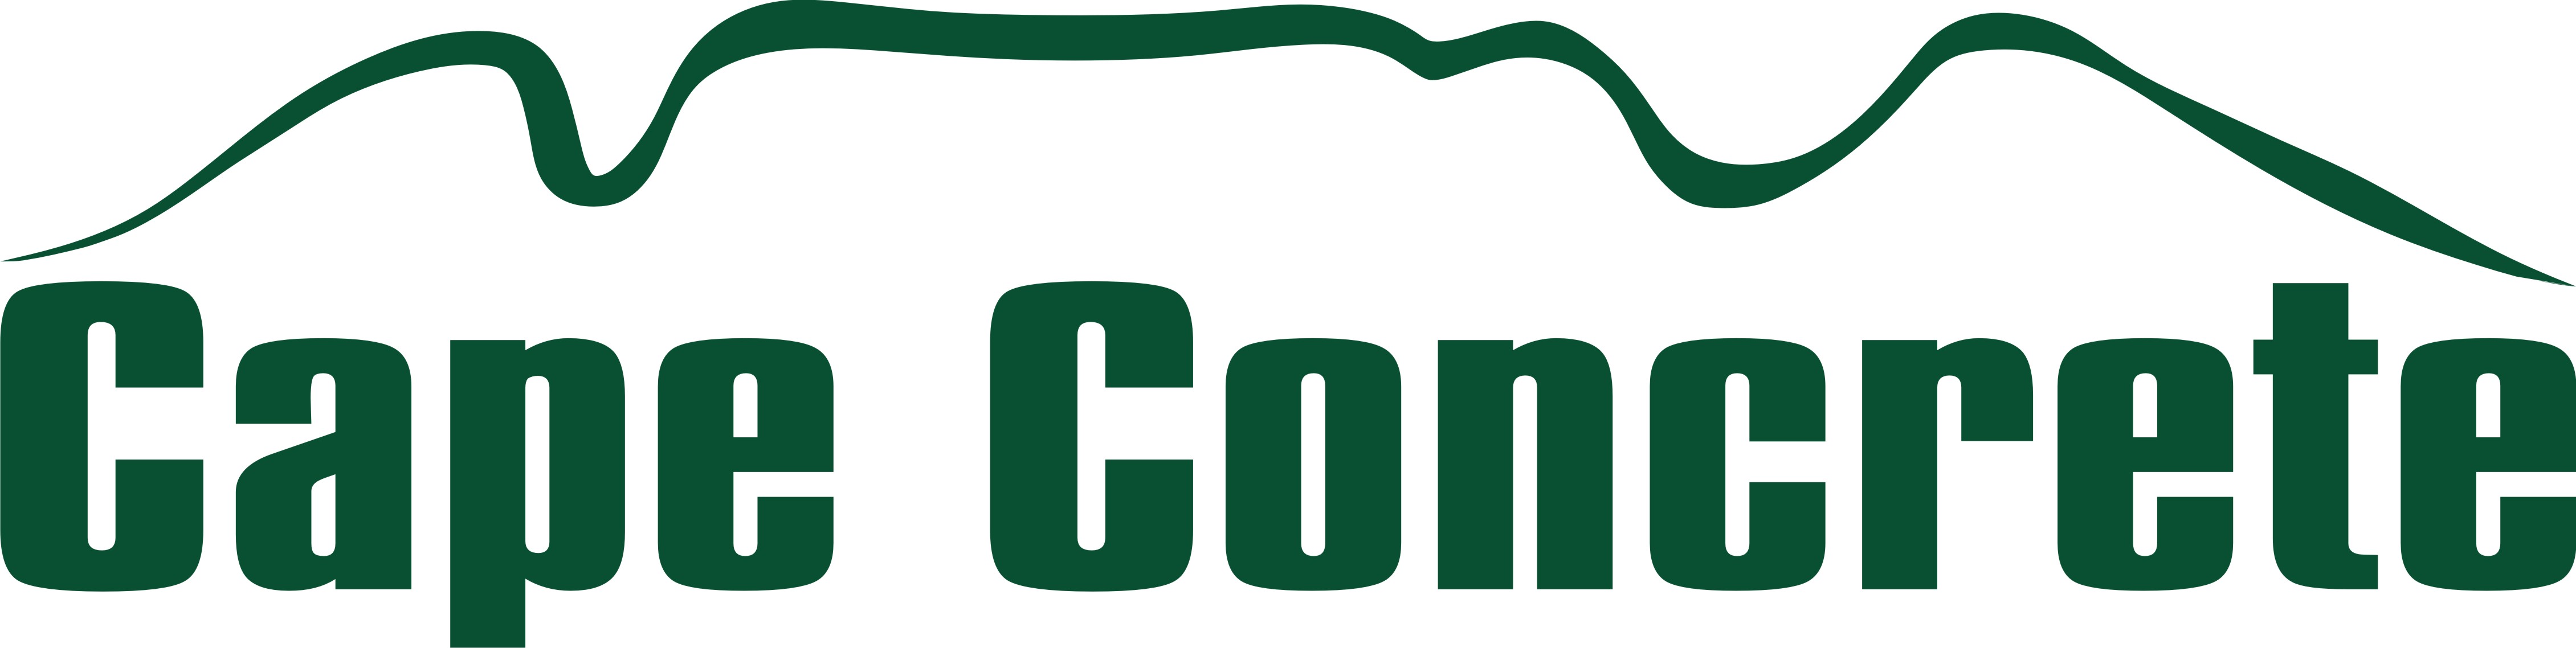 Cape concrete logo